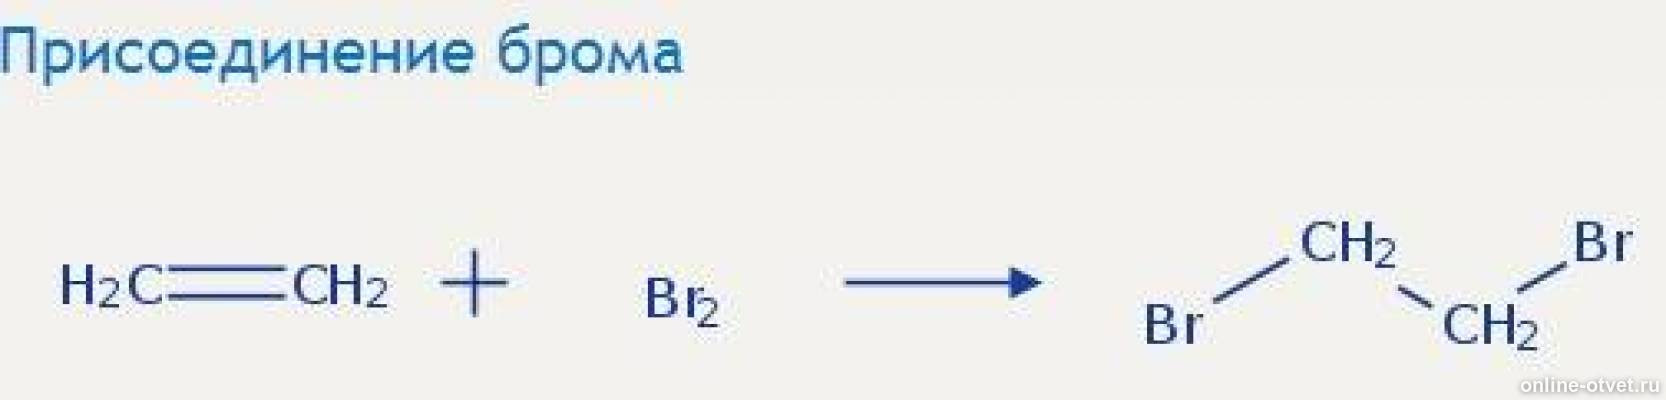 Присоединение брома. Этанол+CL. Реакция присоединения брома. Этен и вода реакция.